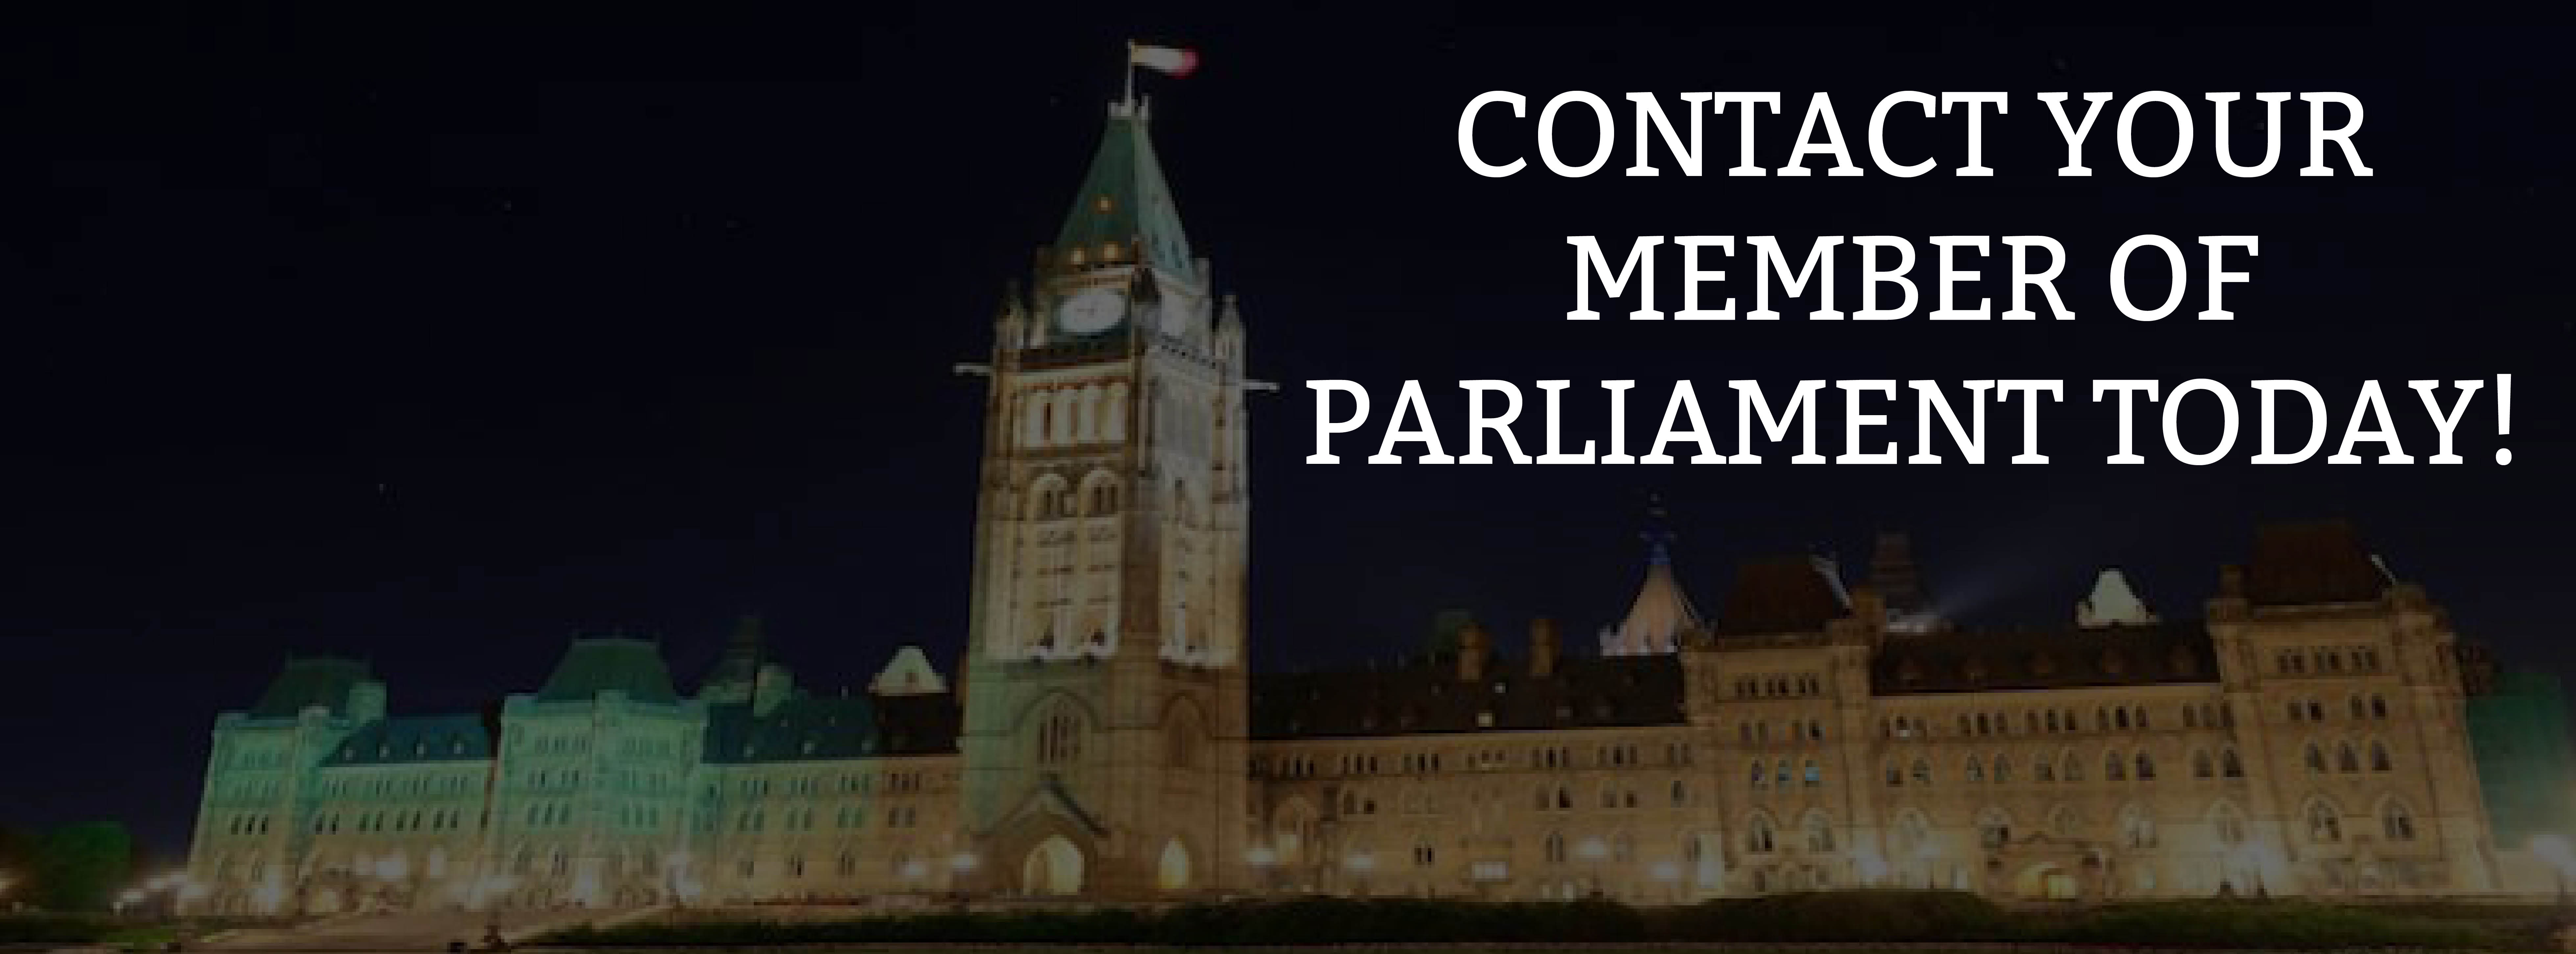 Calling All Canadian Citizens: Take action to end the mandates – Appel à tous les citoyens canadiens : Prenez des mesures pour mettre fin aux mandats